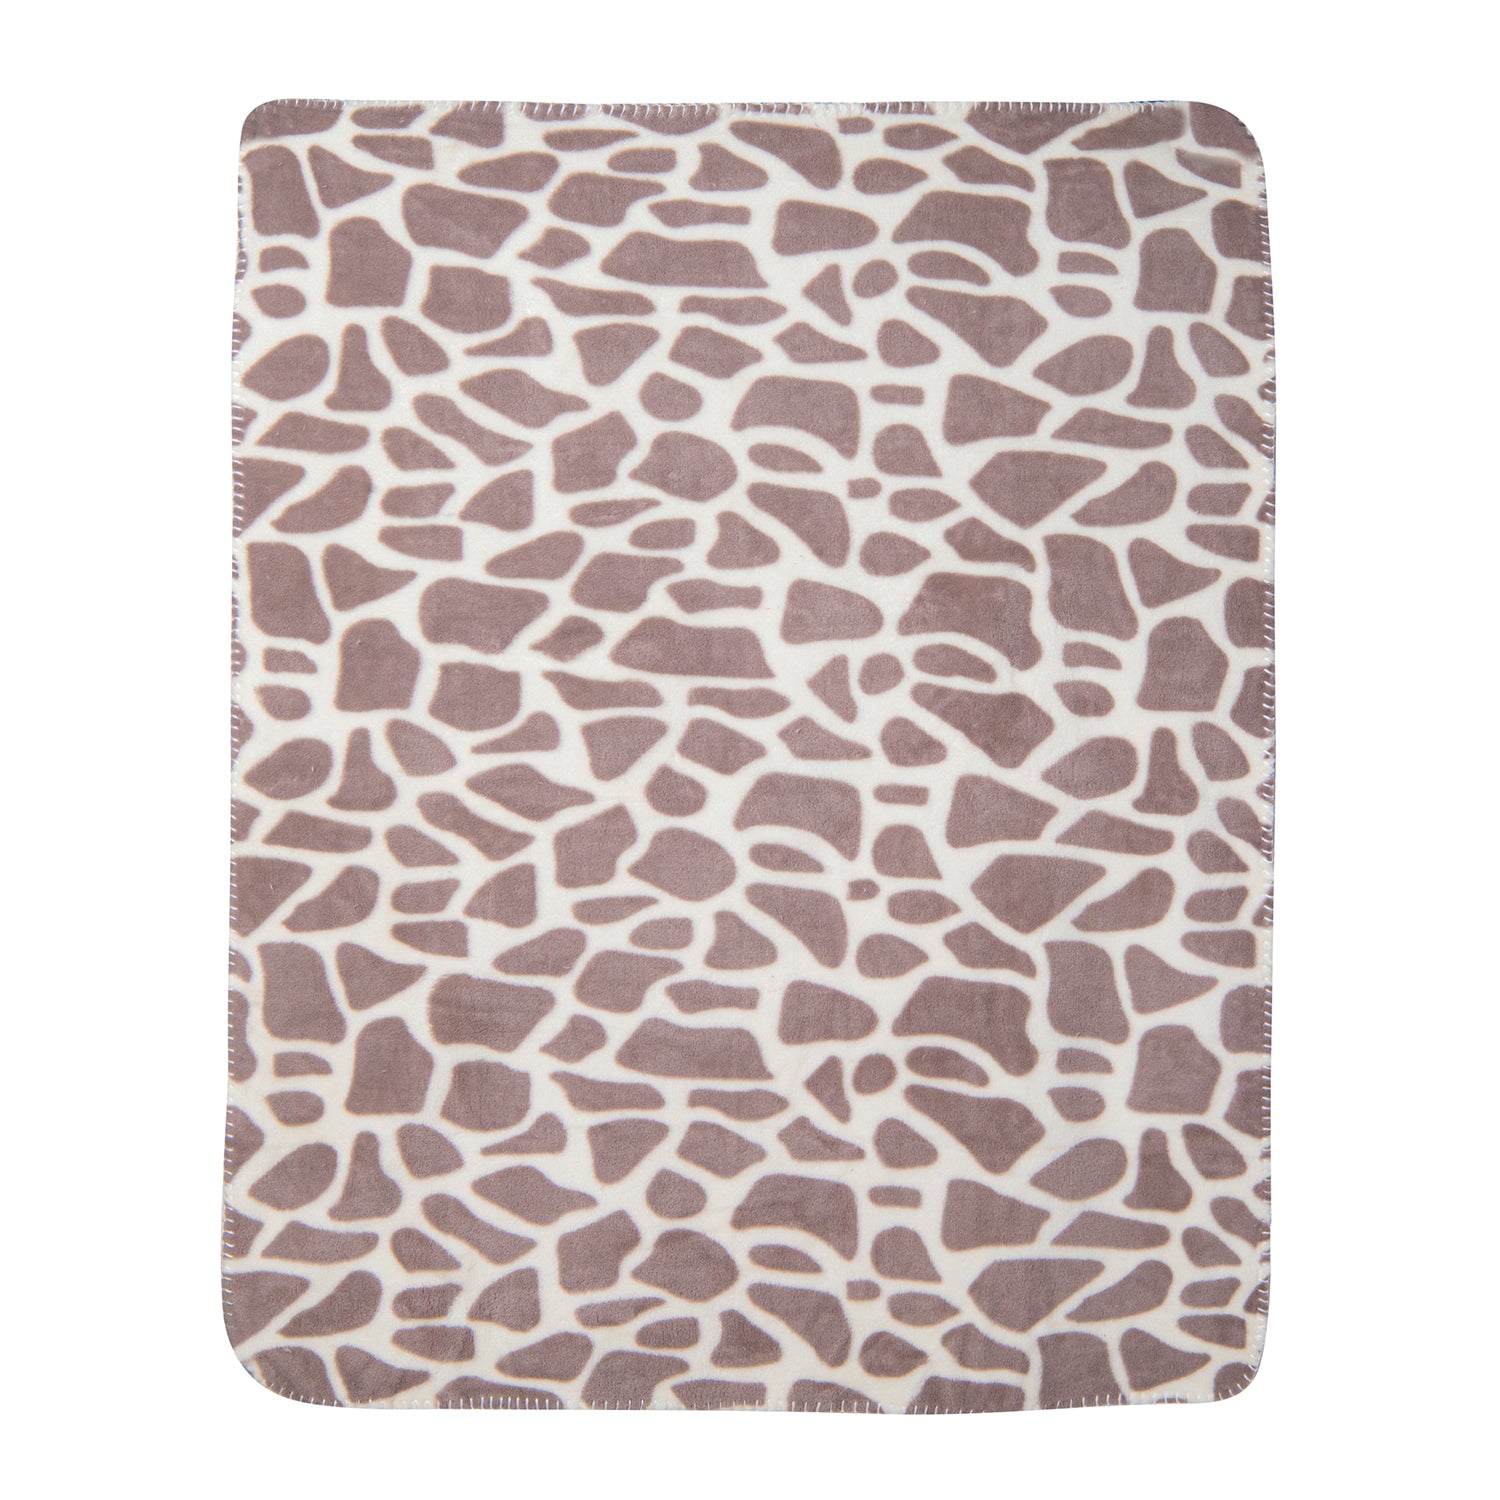 Baby Moo Giraffe Spots Soft Cozy Plush Toy Blanket Grey